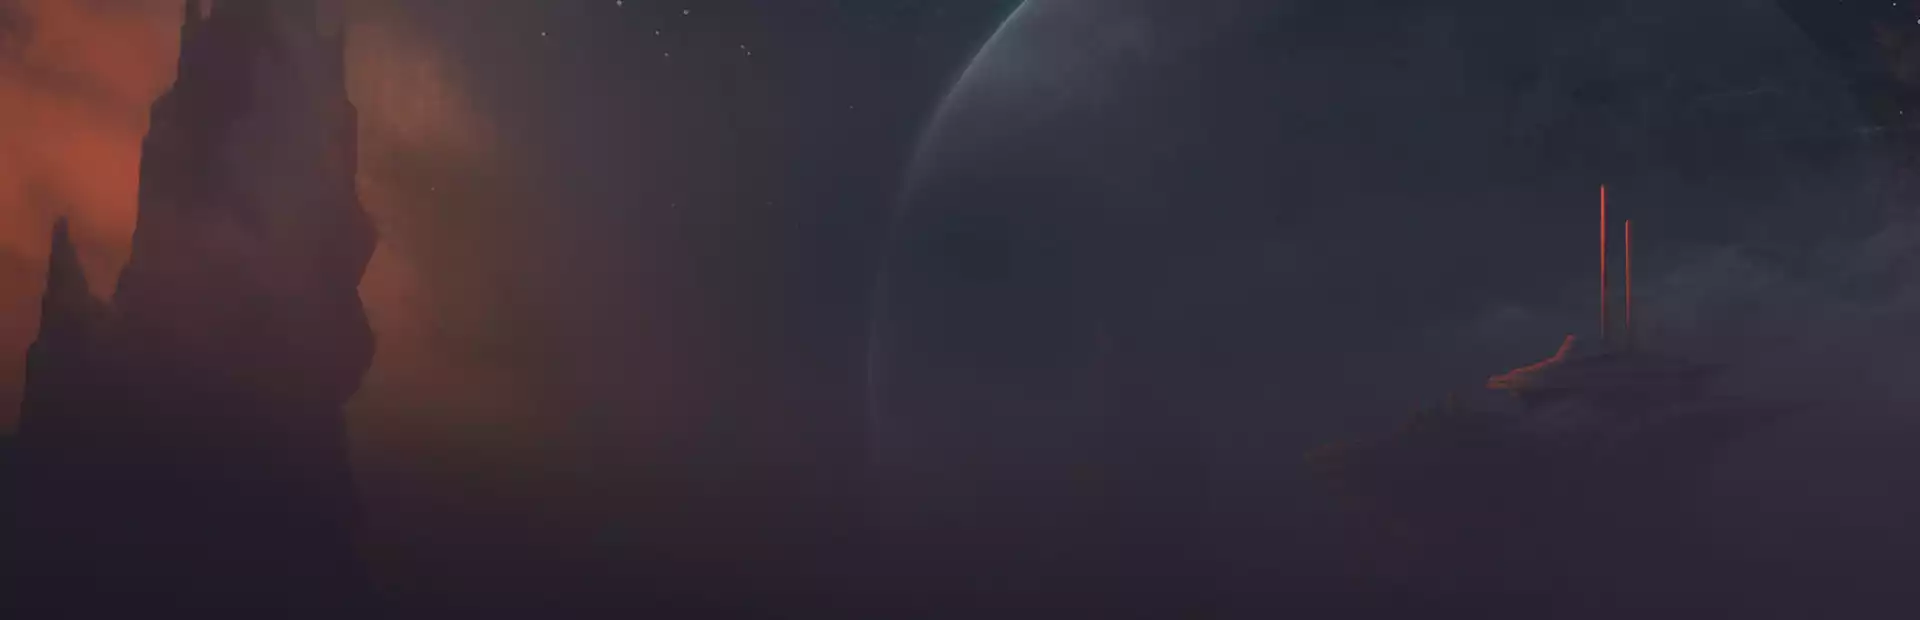 Stellaris - Galaxy Edition Steam Key China